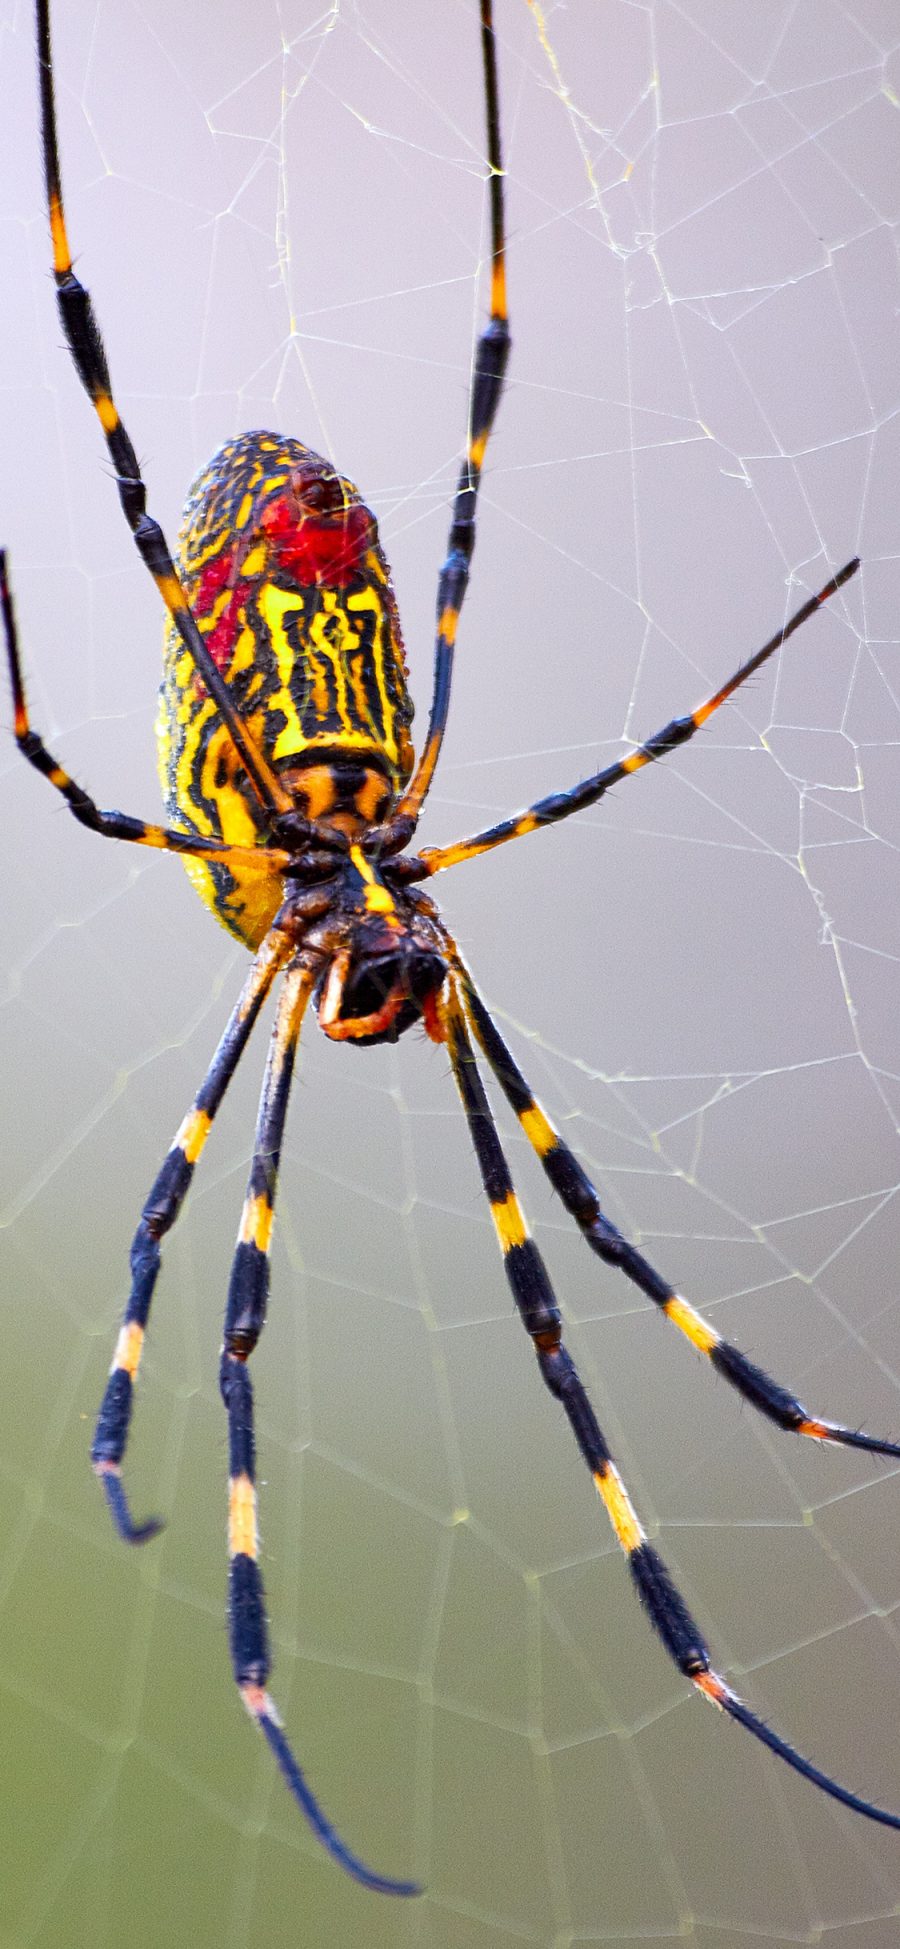 [2436×1125]蜘蛛 昆虫 织网 节肢 苹果手机壁纸图片